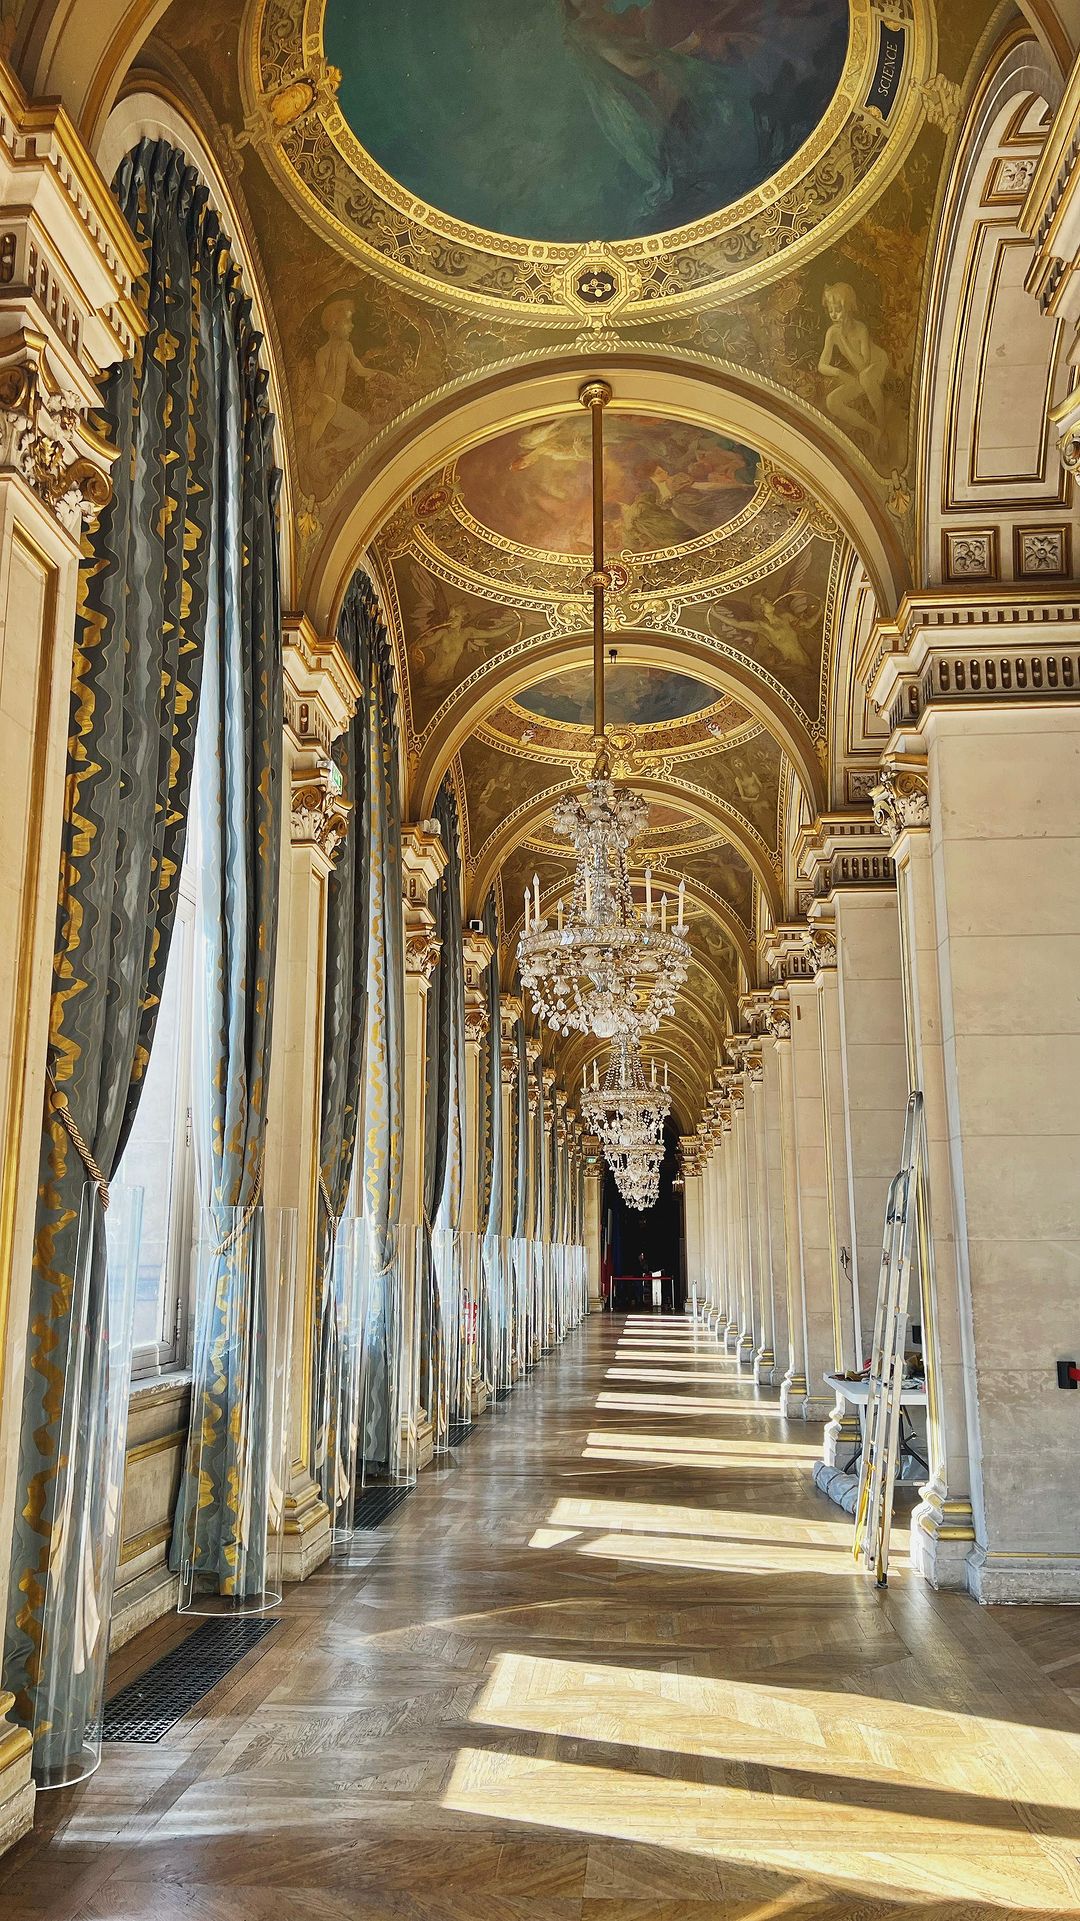 A tour of Hôtel de Ville, Paris. Please note that…